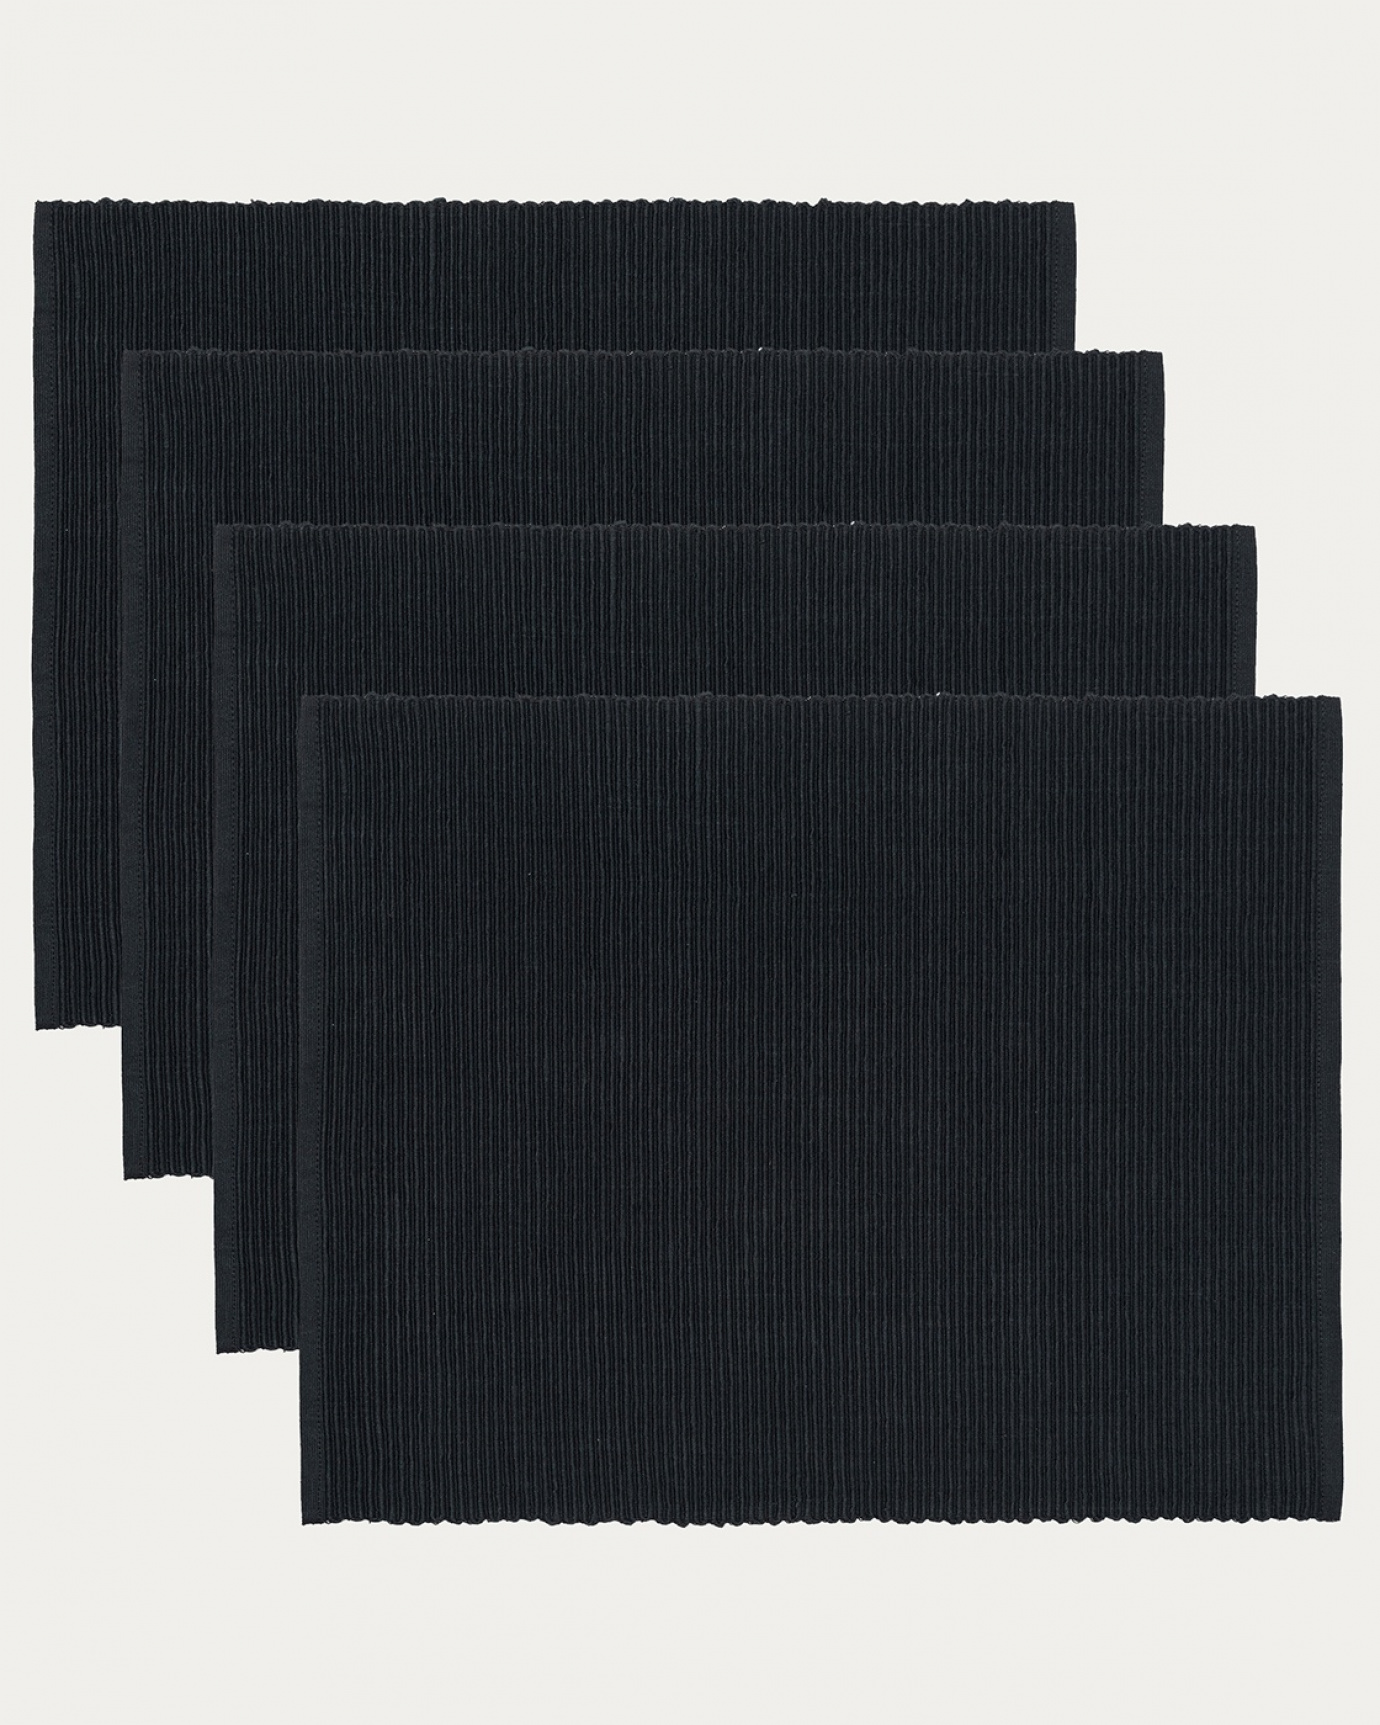 Produktbild schwarz UNI Tischset aus weicher Baumwolle in Rippenqualität von LINUM DESIGN. Größe 35x46 cm und in 4er-Pack verkauft.